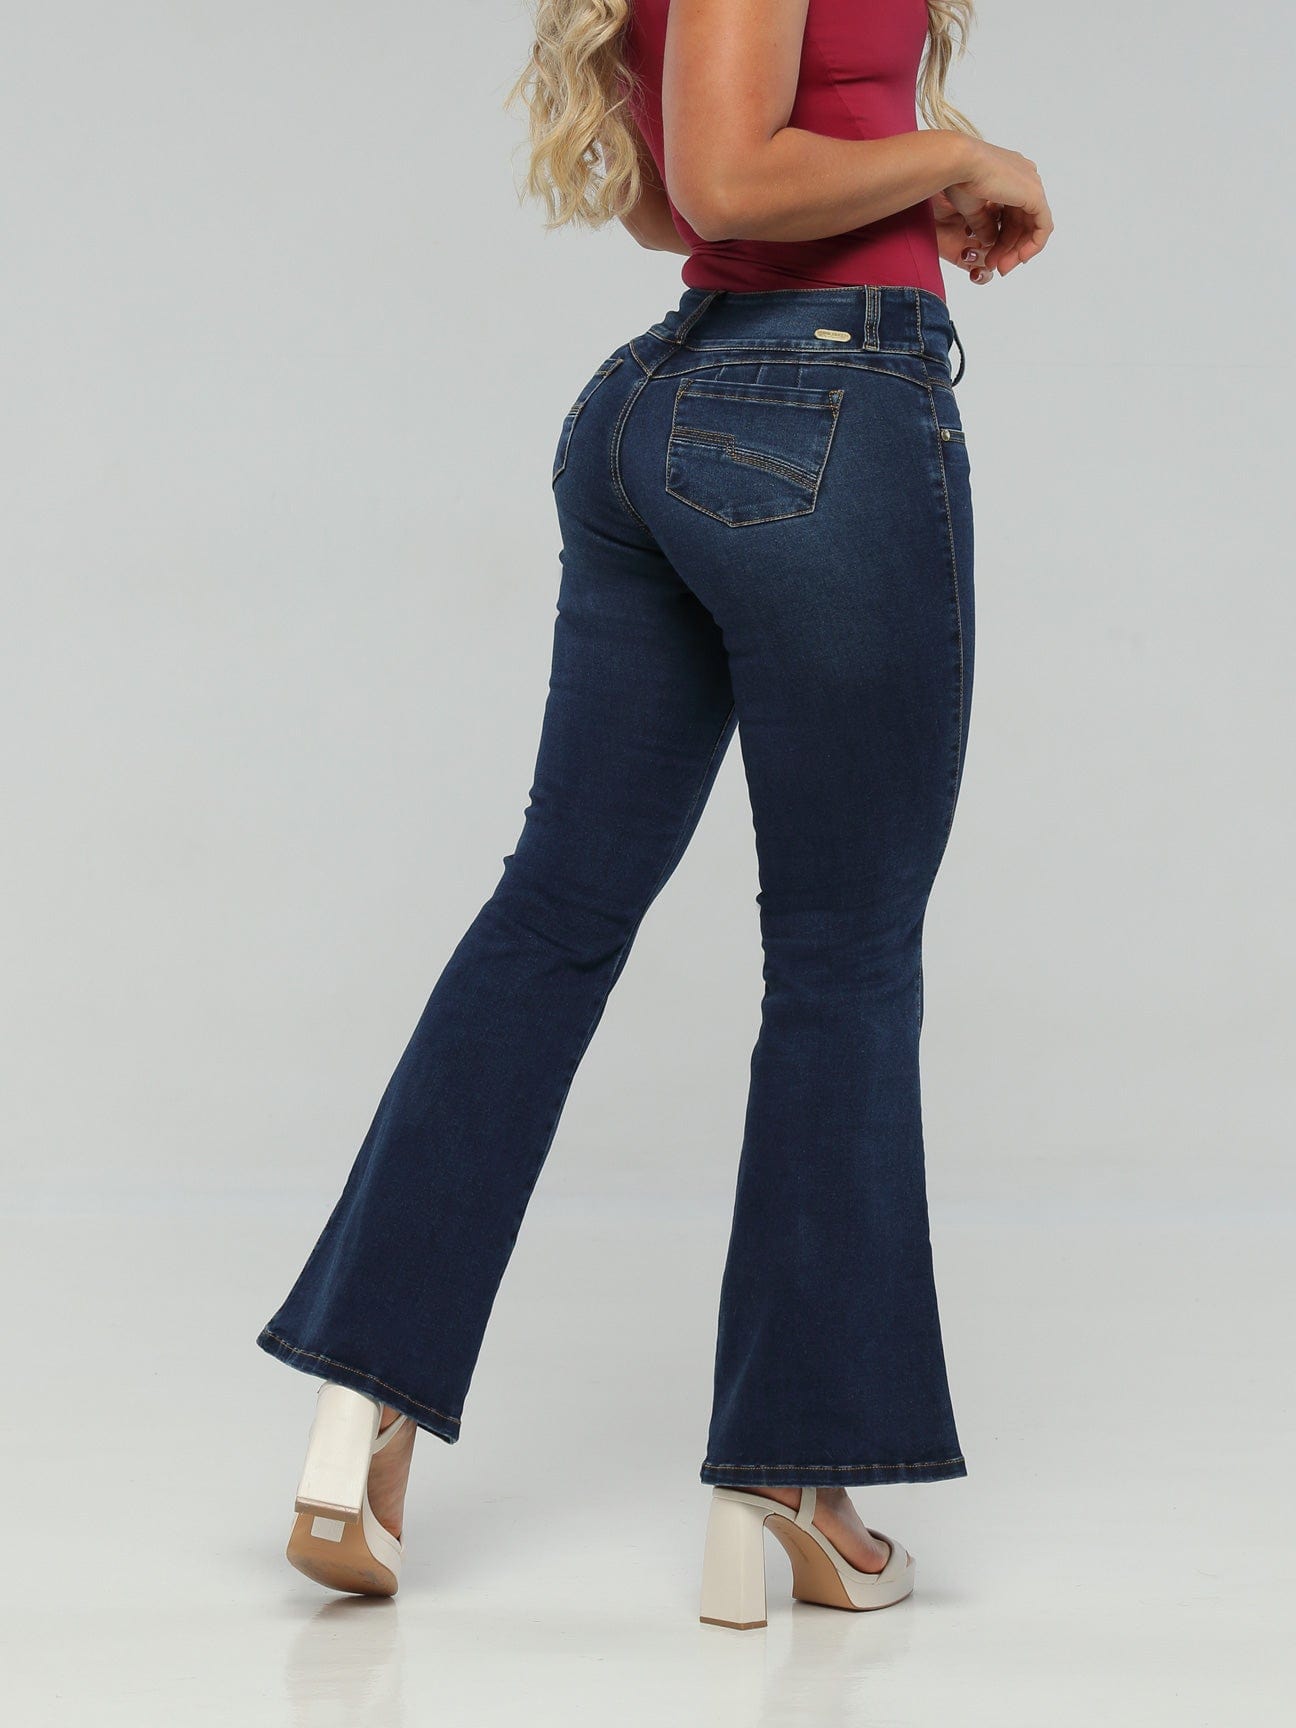 Tabitha Butt Lift Jeans 15164